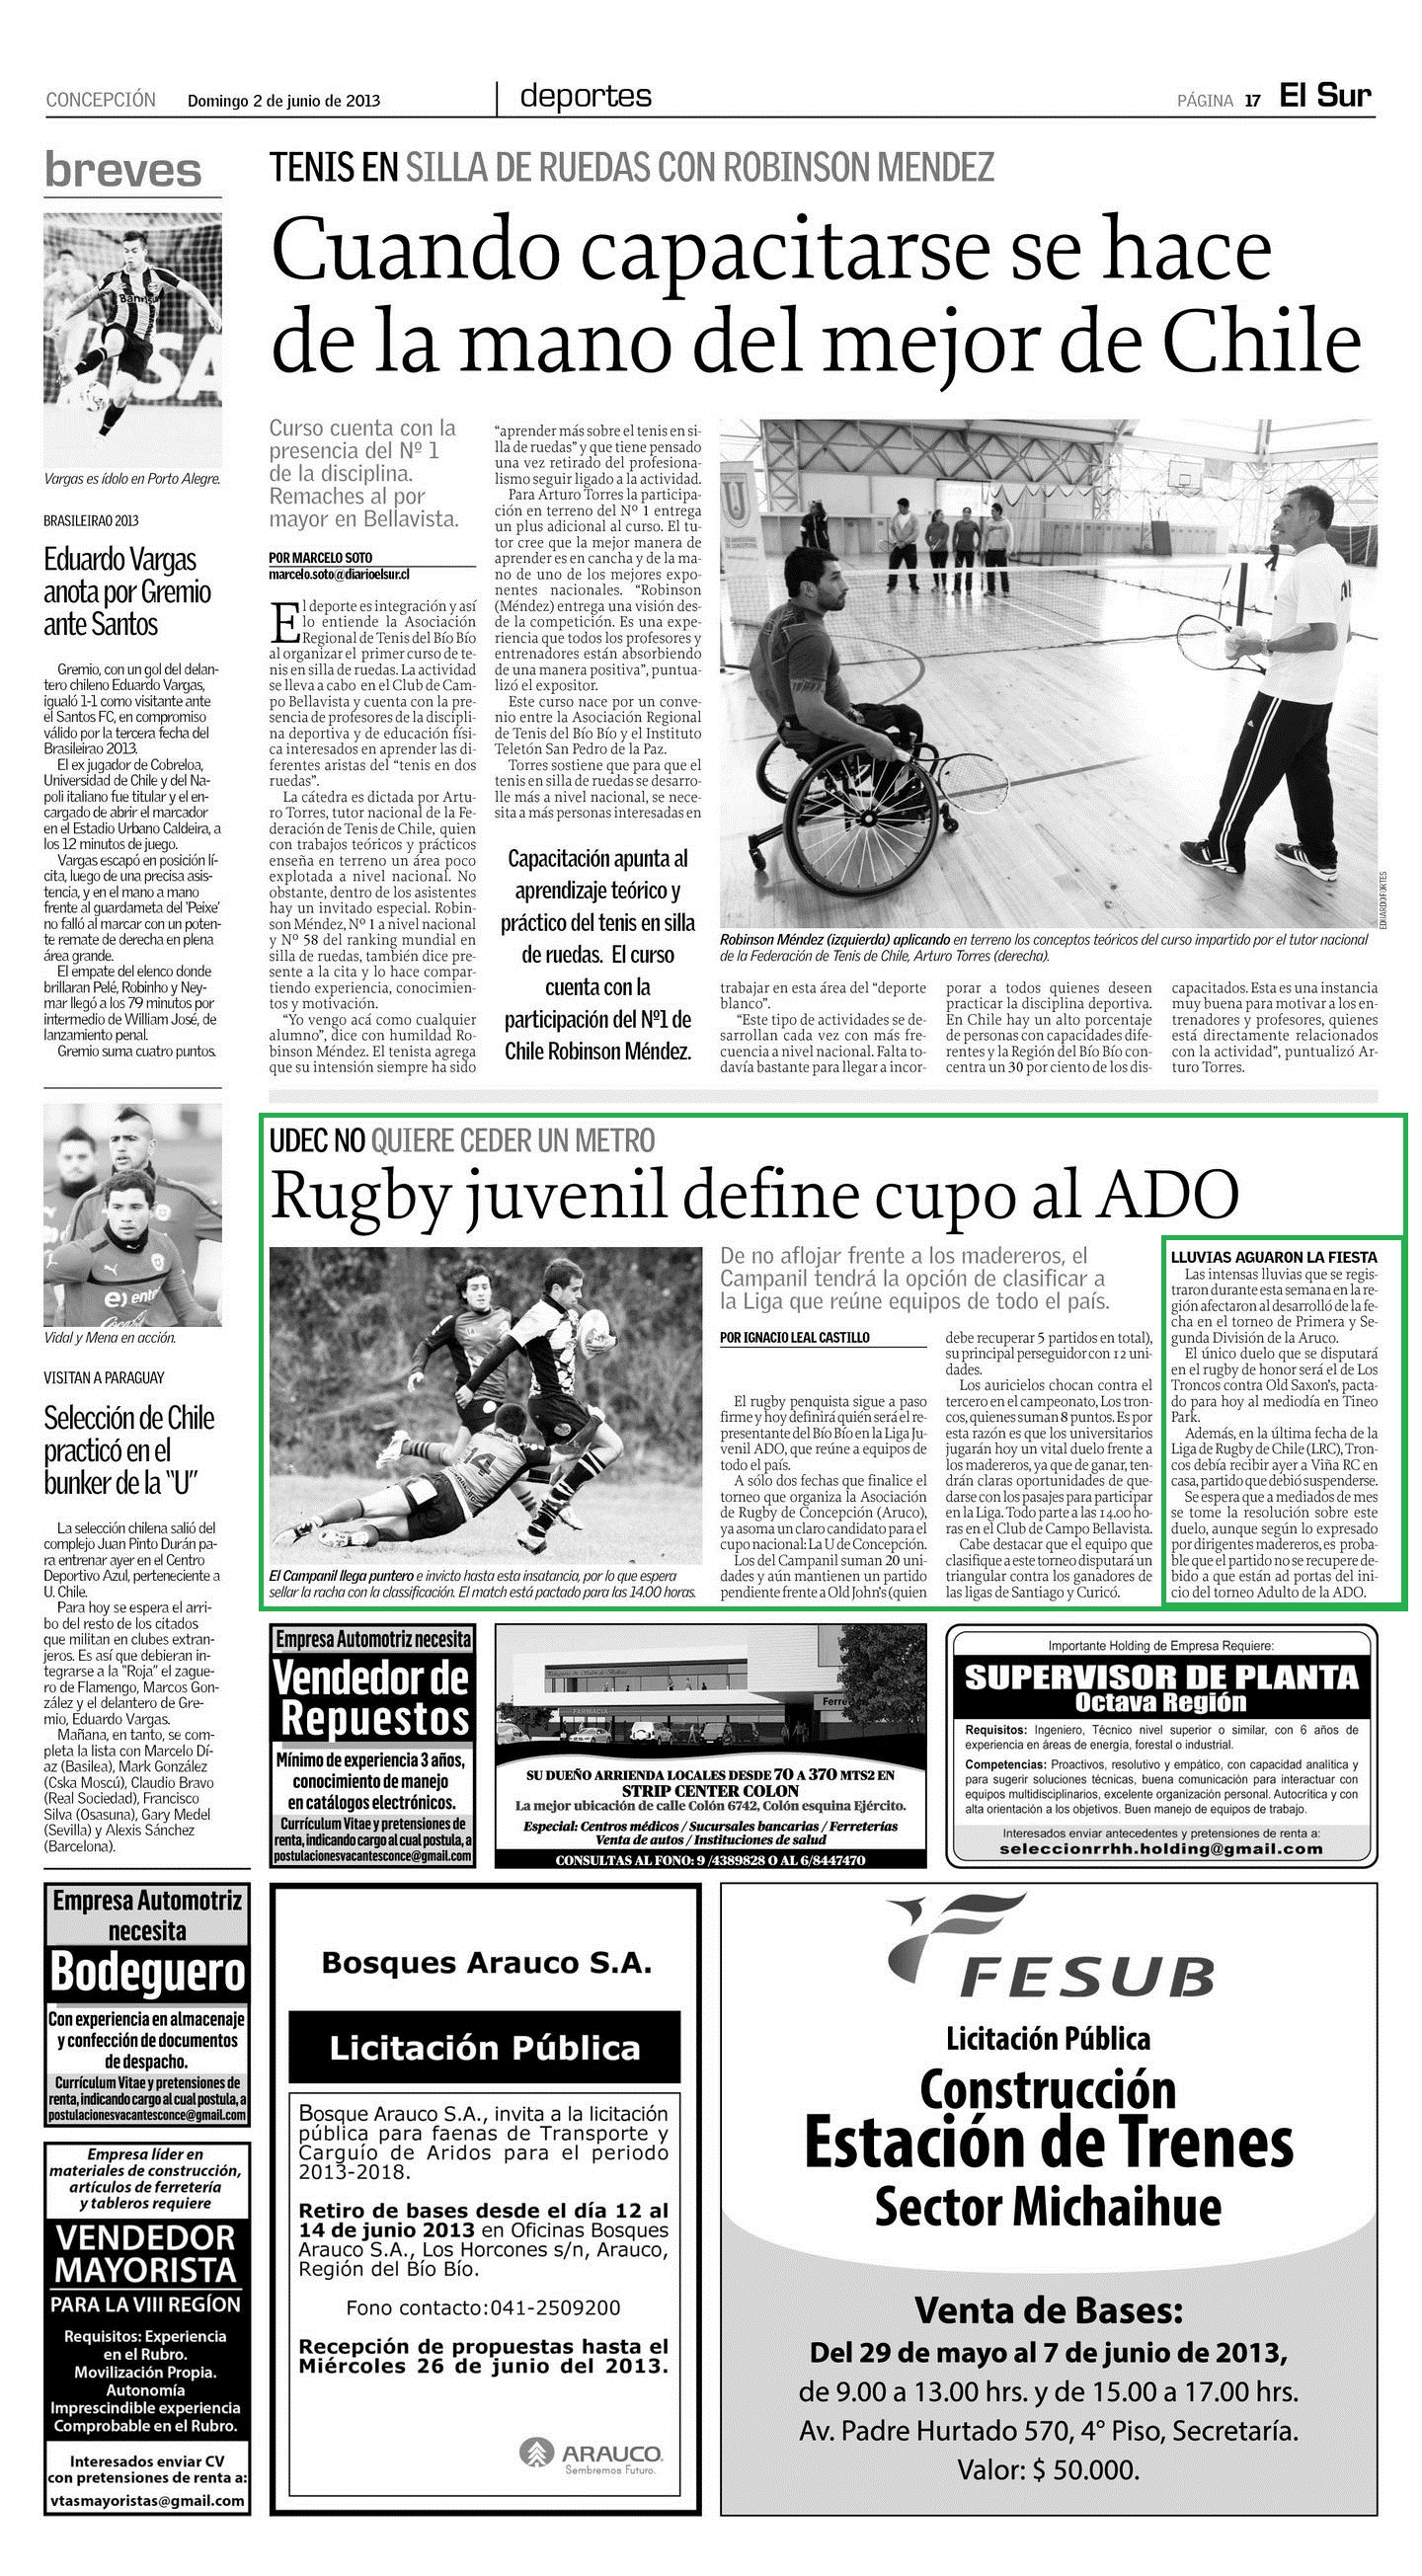 02-06-13 Diario El Sur, de Concepción_pag_17b-1440